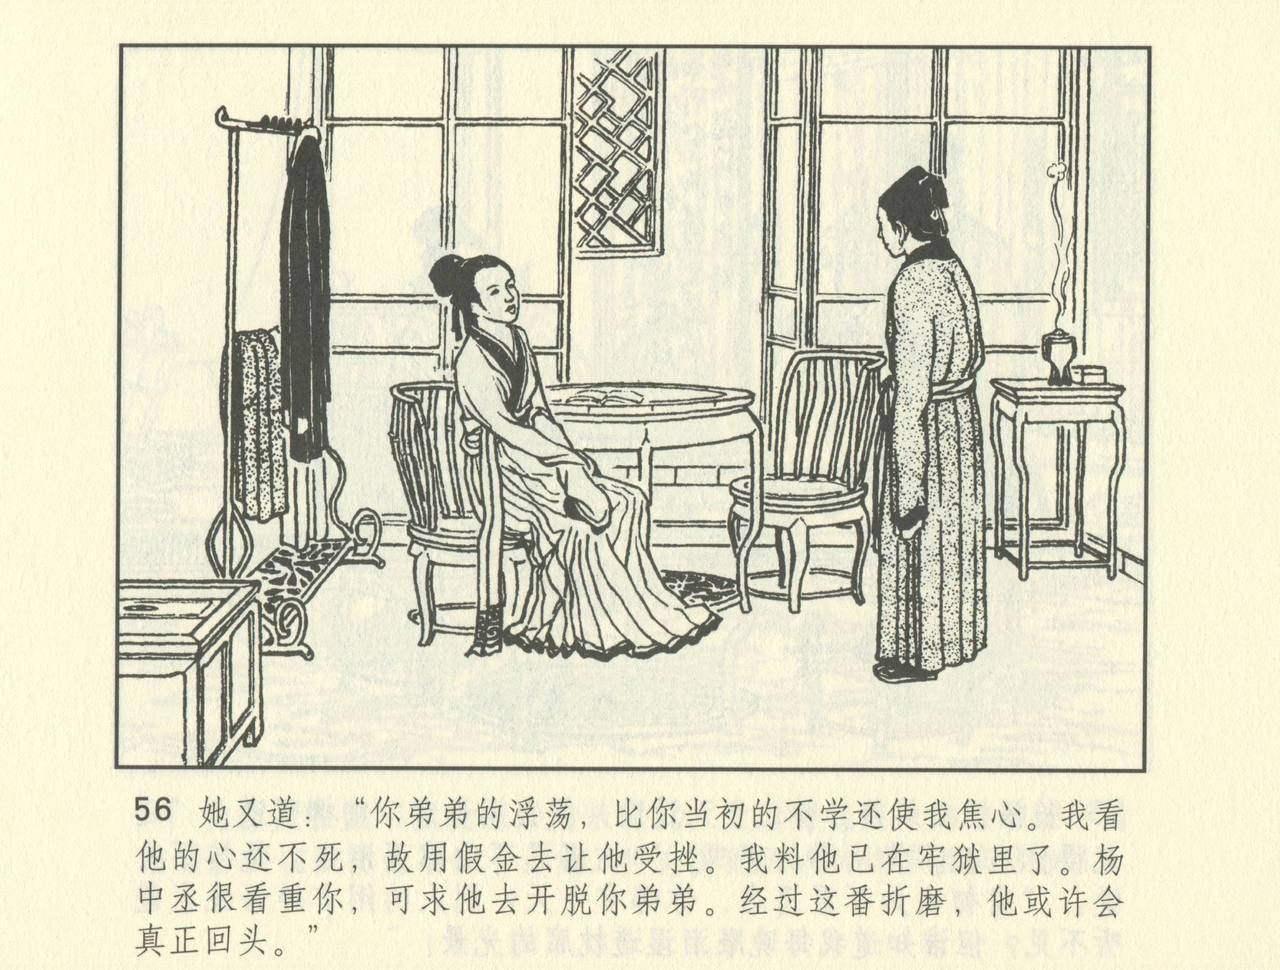 聊斋志异 张玮等绘 天津人民美术出版社 卷二十一 ~ 三十 528